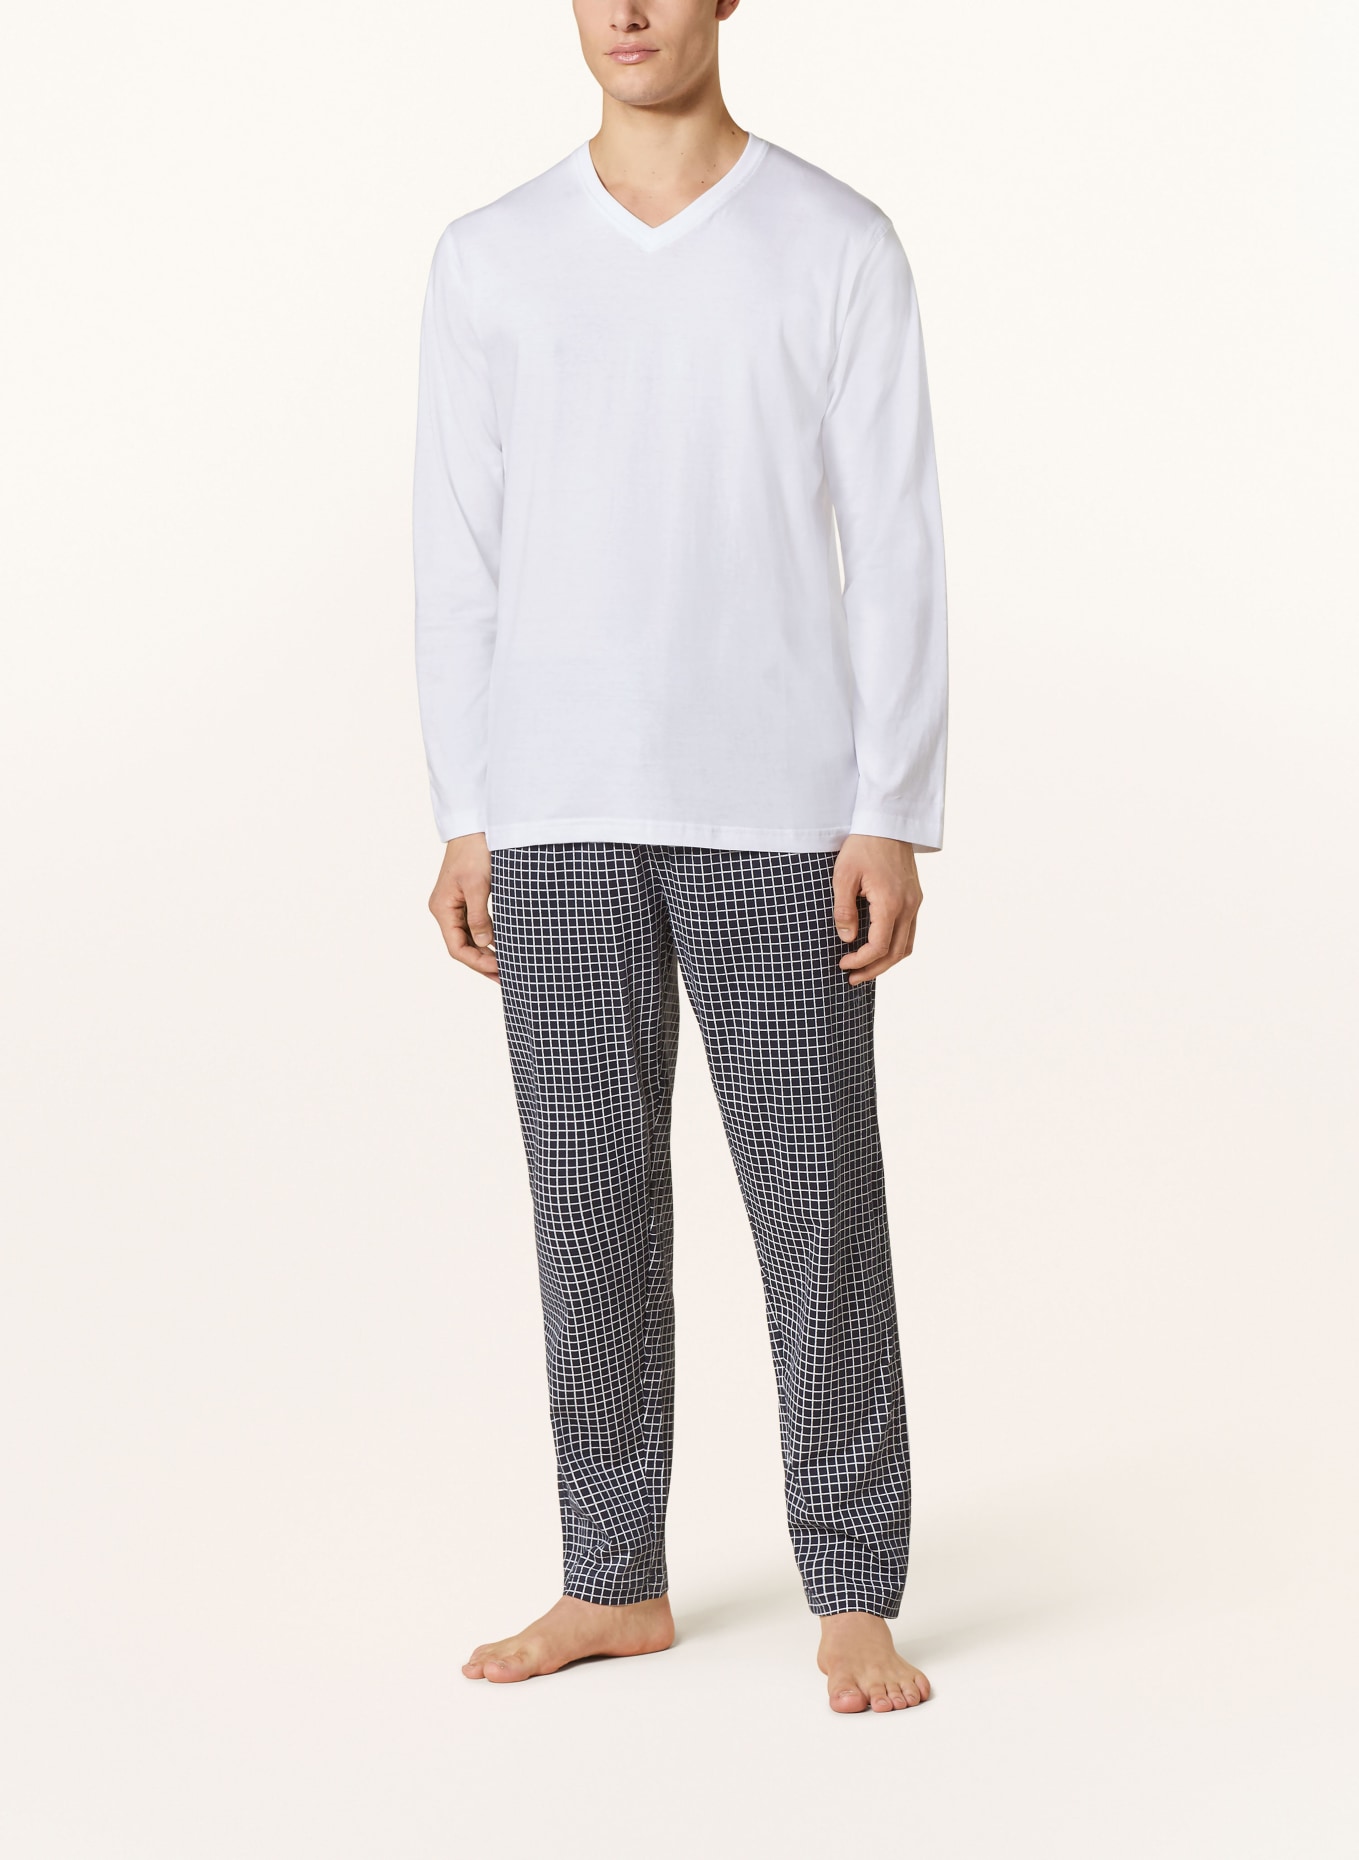 STROKESMAN'S Pajama shirt, Color: WHITE (Image 2)